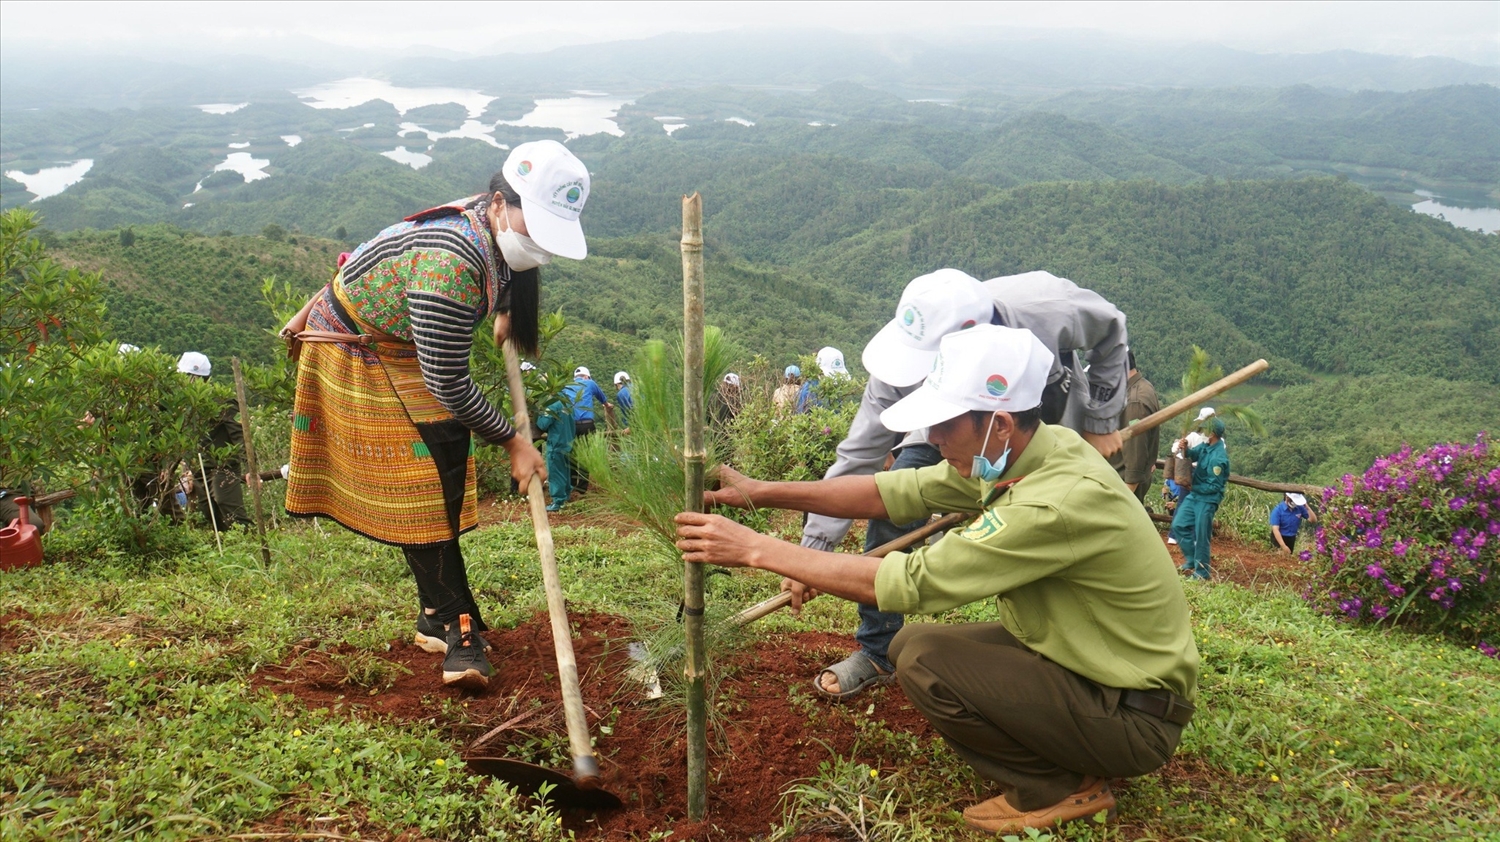 Mục tiêu chuyển đổi xanh được lồng ghép trong Chương trình phủ xanh đất trống đồi núi trọc, kế tiếp là Chương trình 5 triệu ha rừng. (Ảnh minh họa)